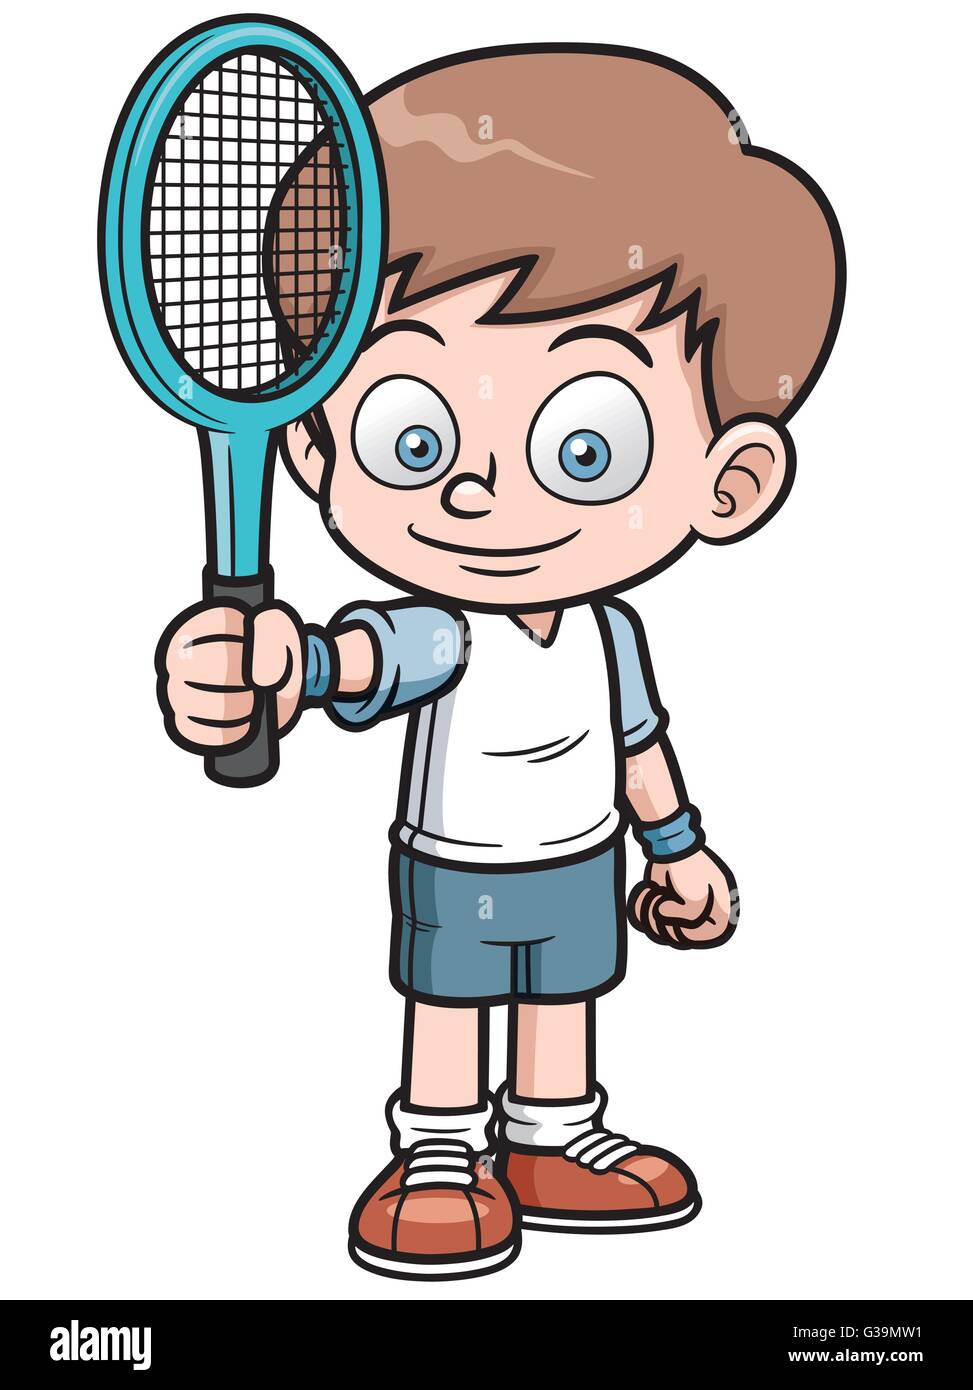 Tennis cartoon immagini e fotografie stock ad alta risoluzione - Alamy